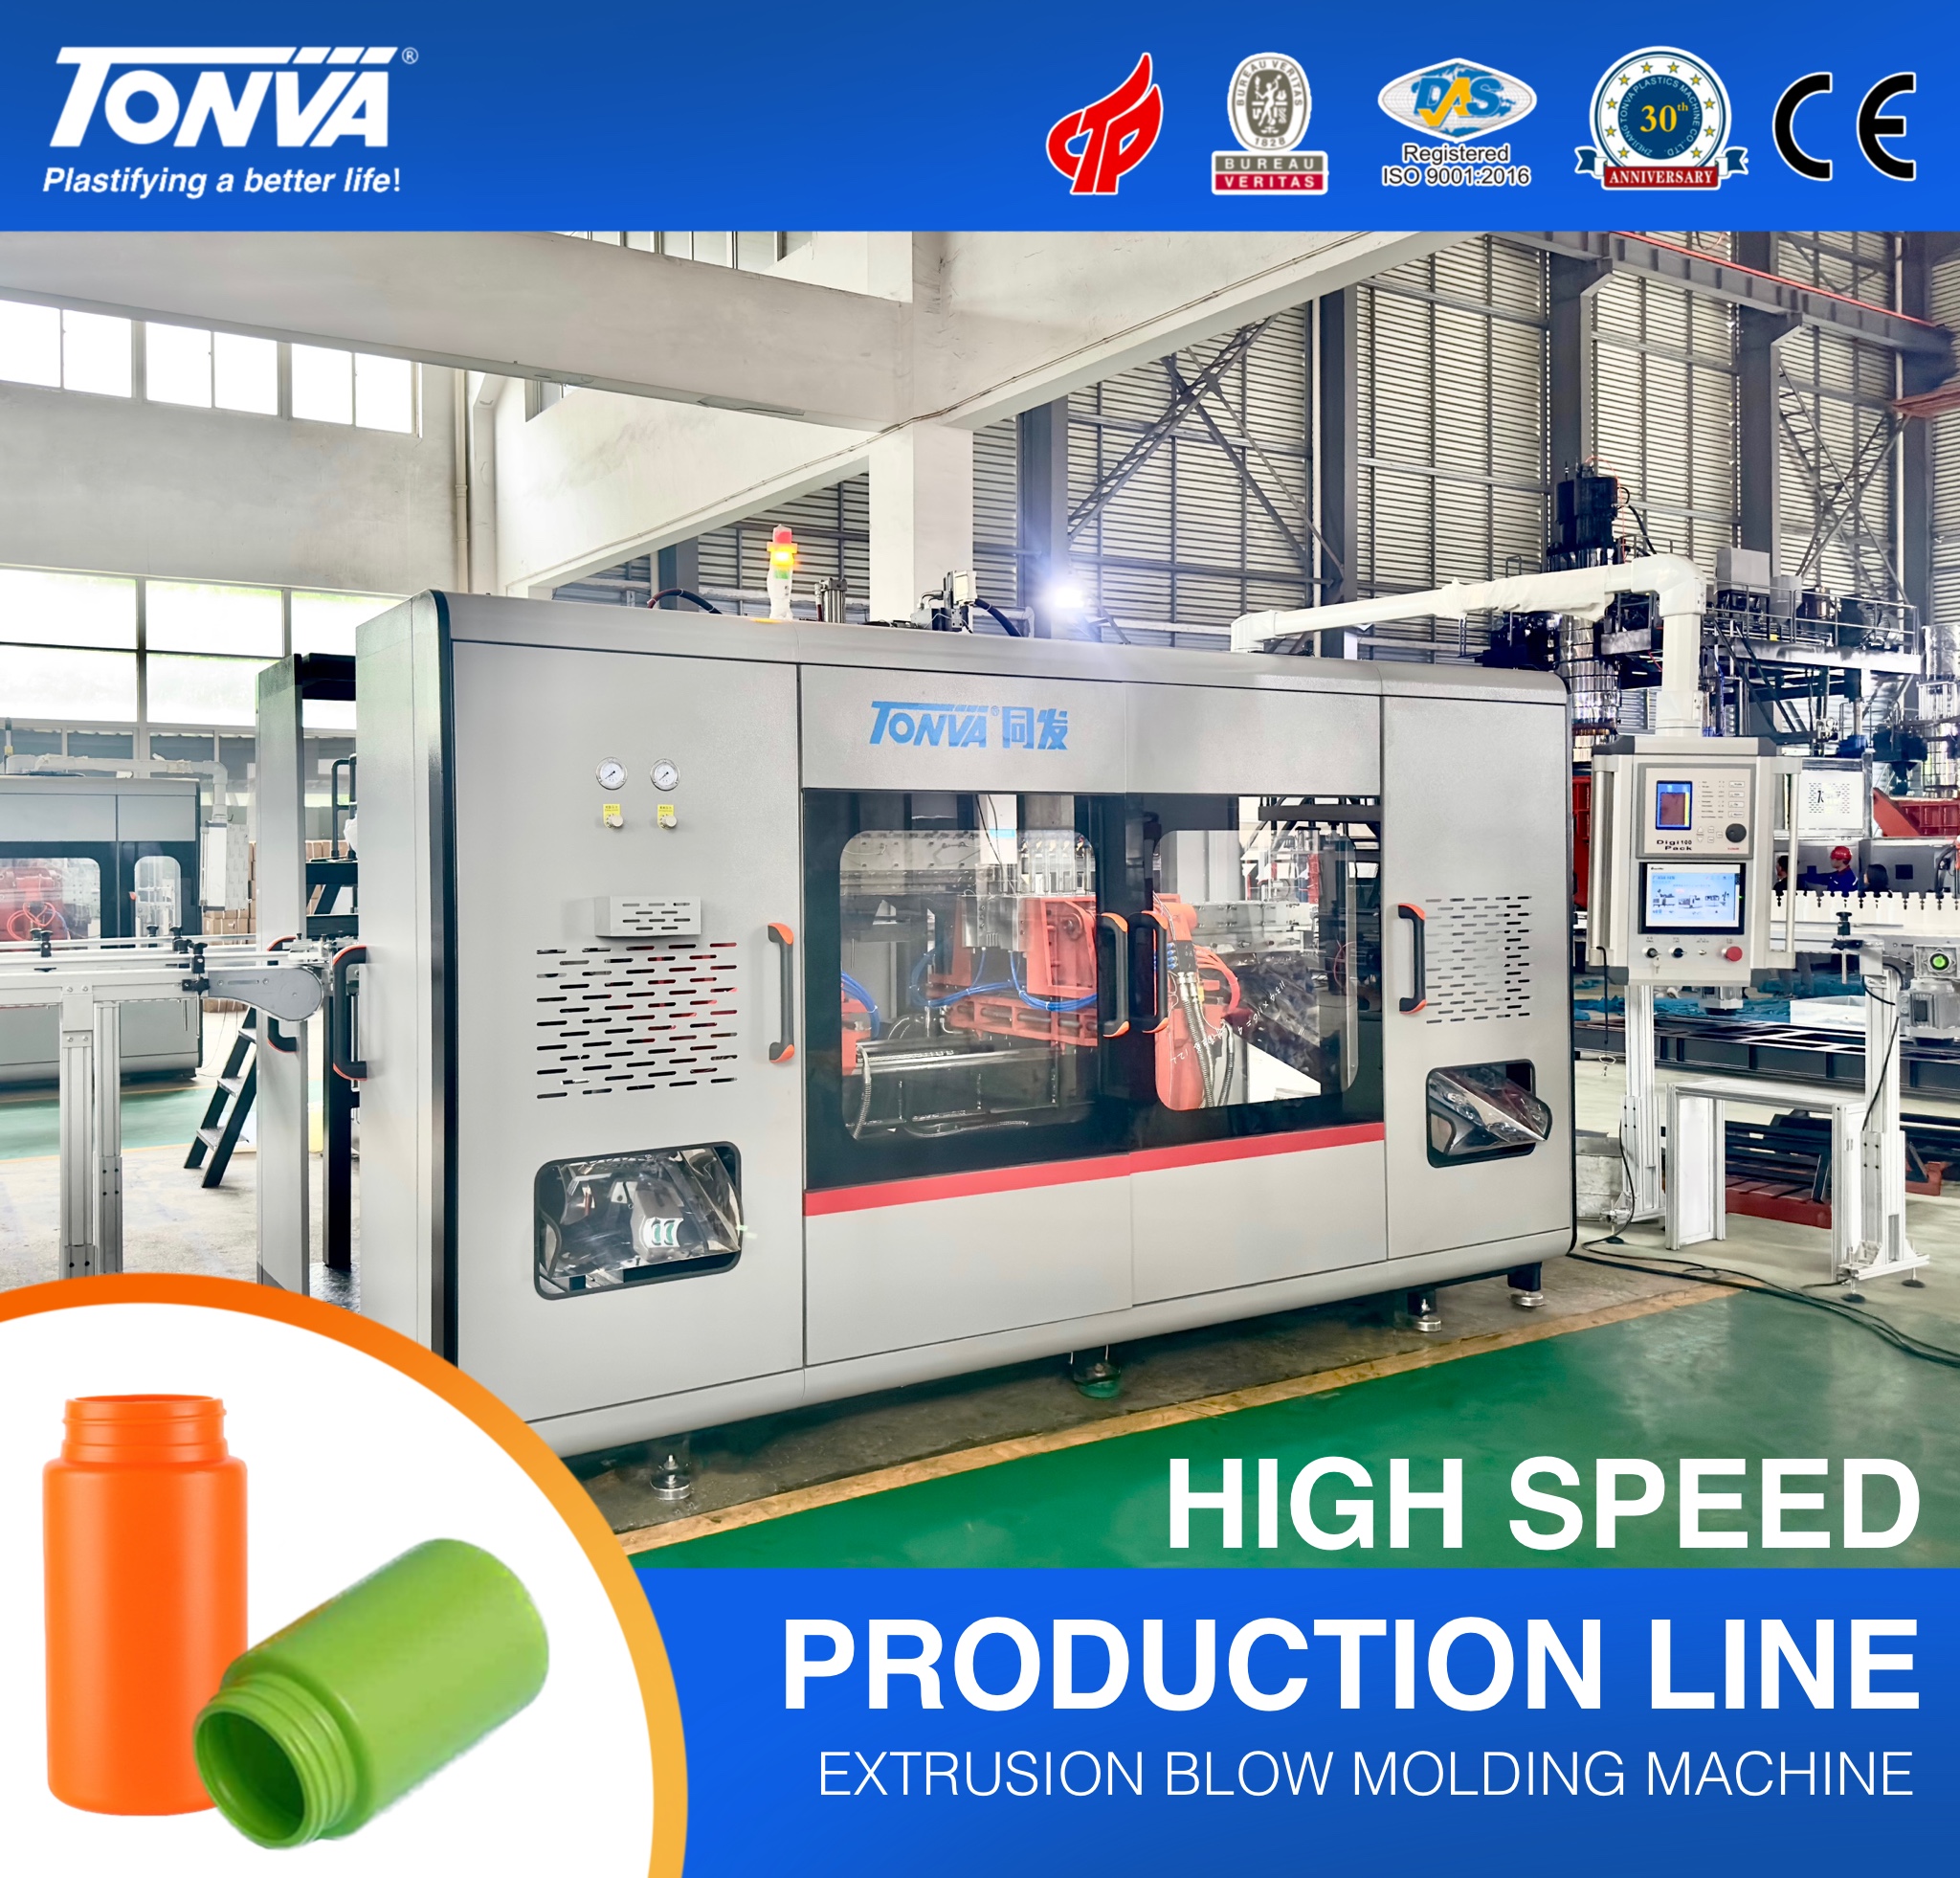 Máquina de moldeo por soplado de alto rendemento TONVA 10 cavidades para a liña de produción de botellas de plástico Imaxe destacada